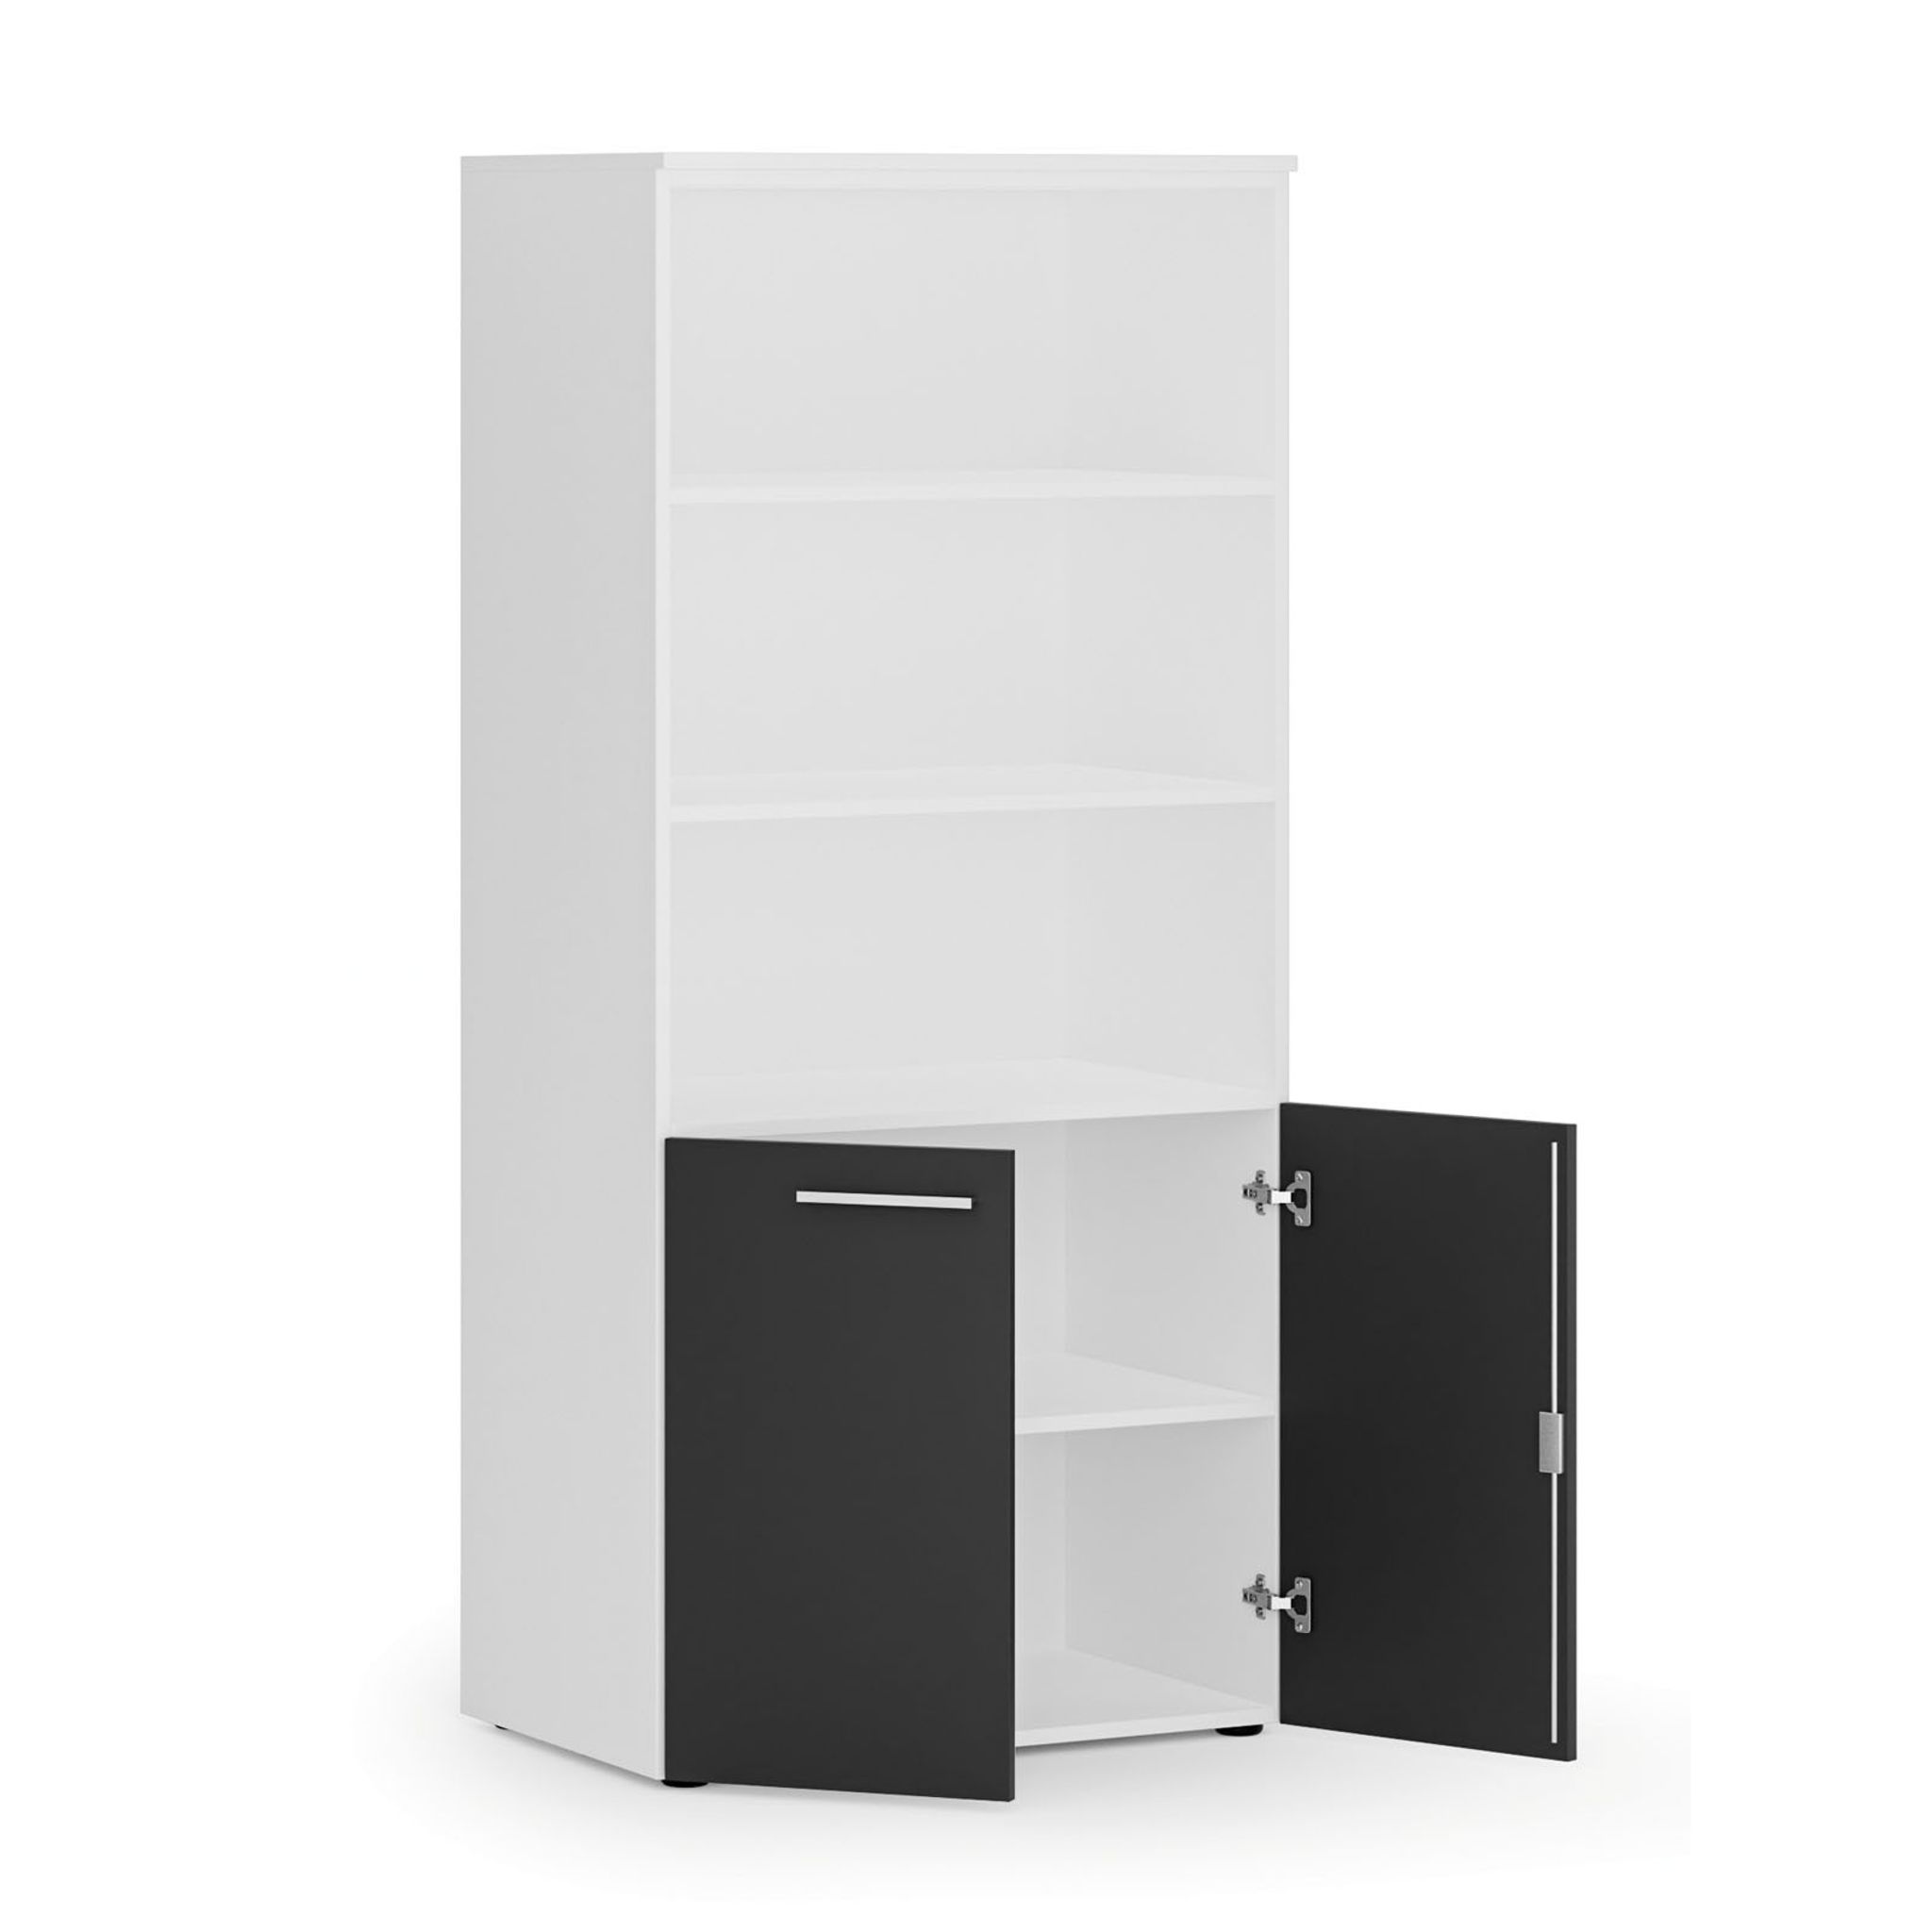 Kombinovaná kancelářská skříň PRIMO WHITE, nízké dveře, 1781 x 800 x 500 mm, bílá/grafit